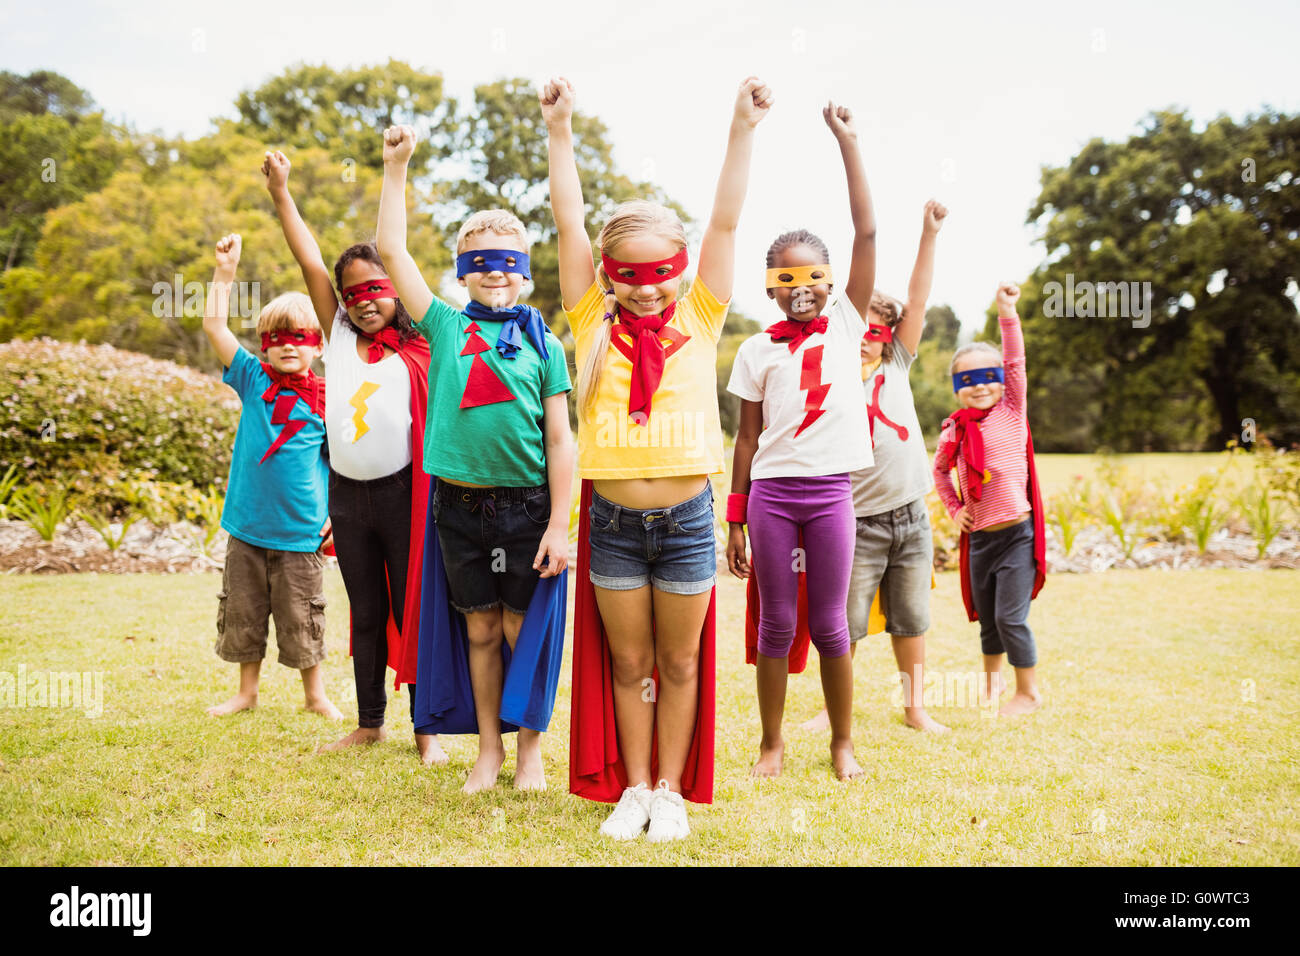 Kinder tragen Superhelden Kostüm ansehen Stockfoto